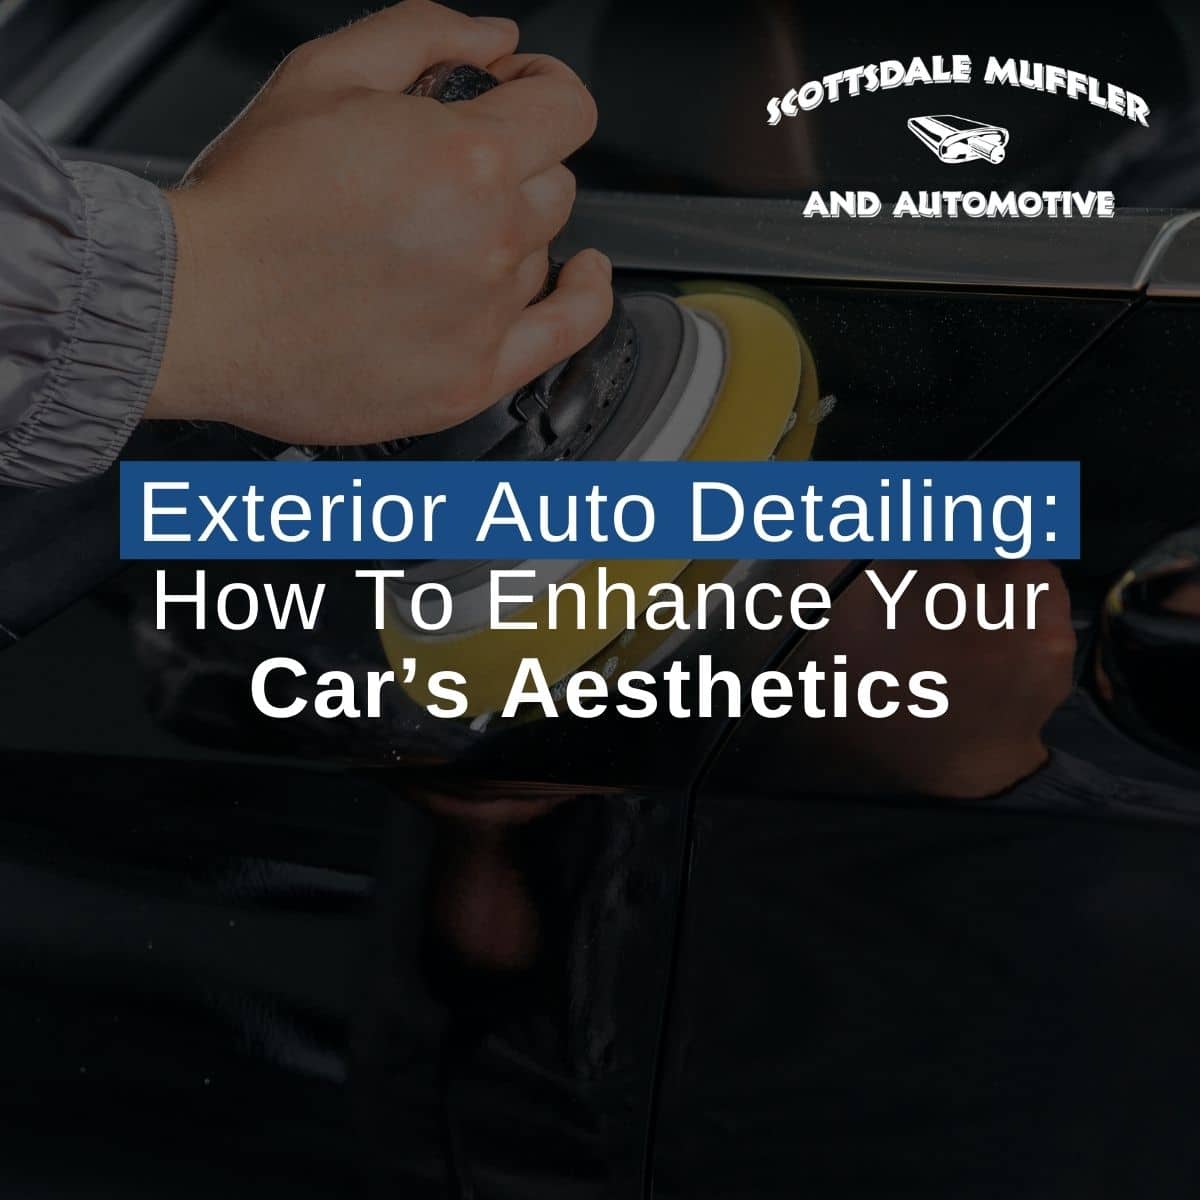 Exterior Auto Detailing How To Enhance Your Car’s Aesthetics